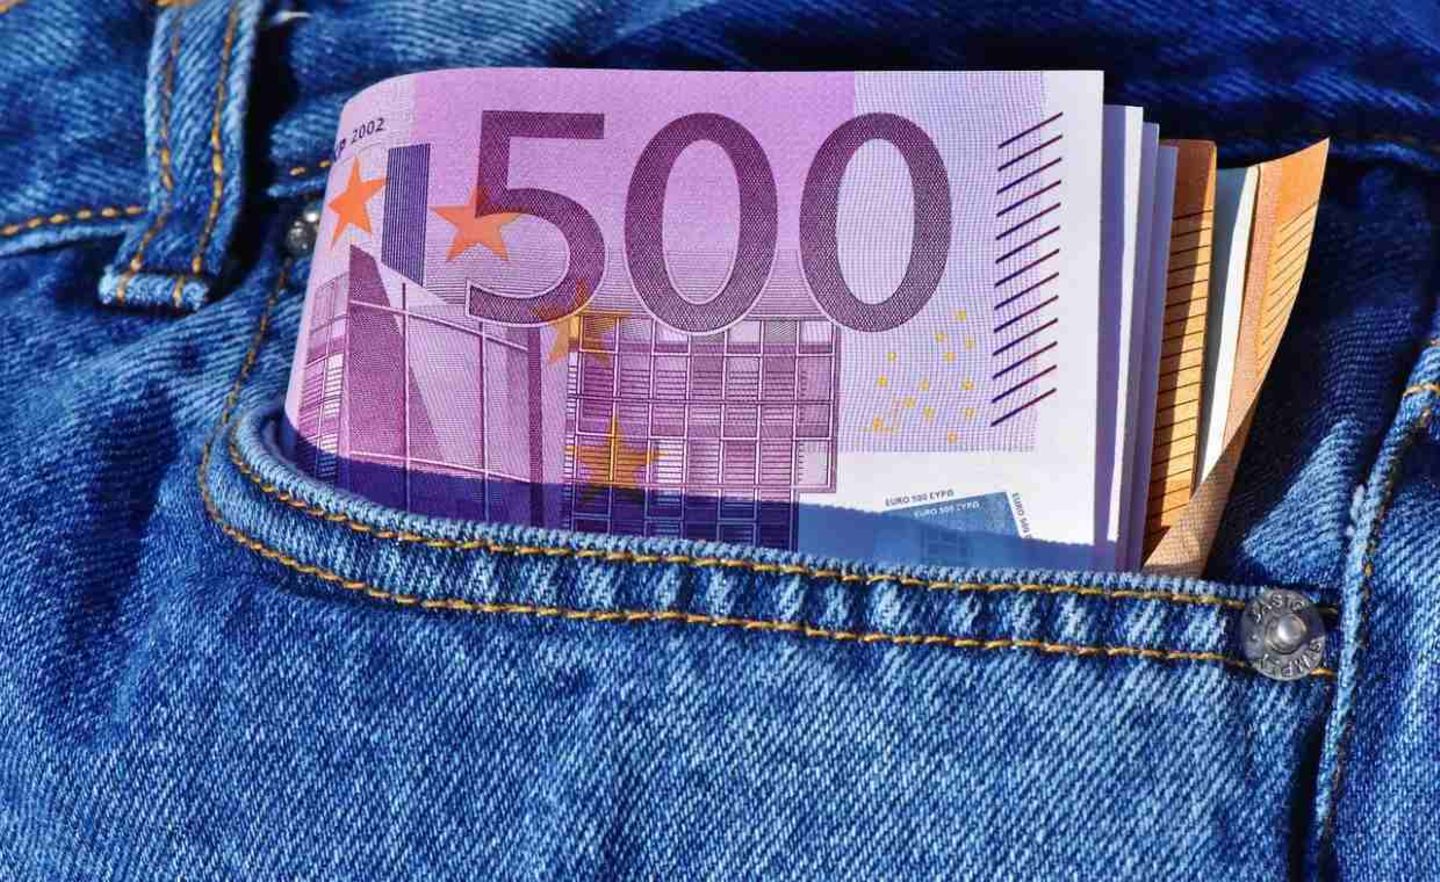 Der 500-Euro-Schein wird aus dem Verkehr gezogen